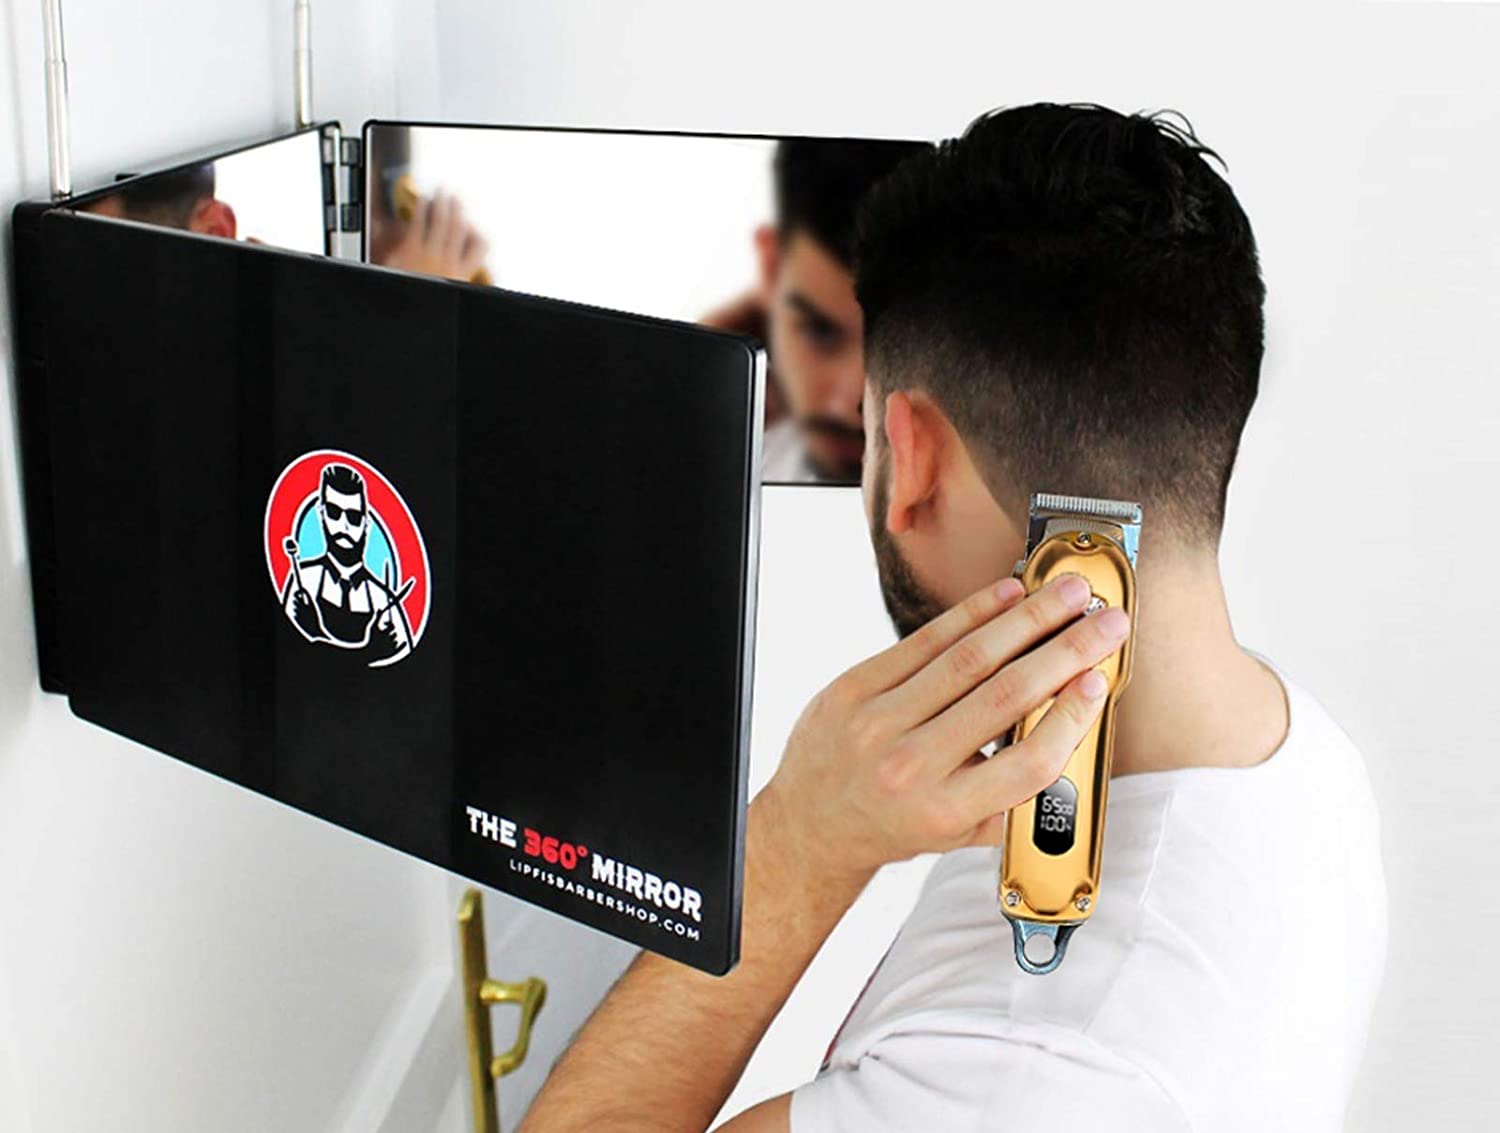 360 Mirror - Self Cut Mirror System - Cut your Own Hair – LipFi's Barber  Shop